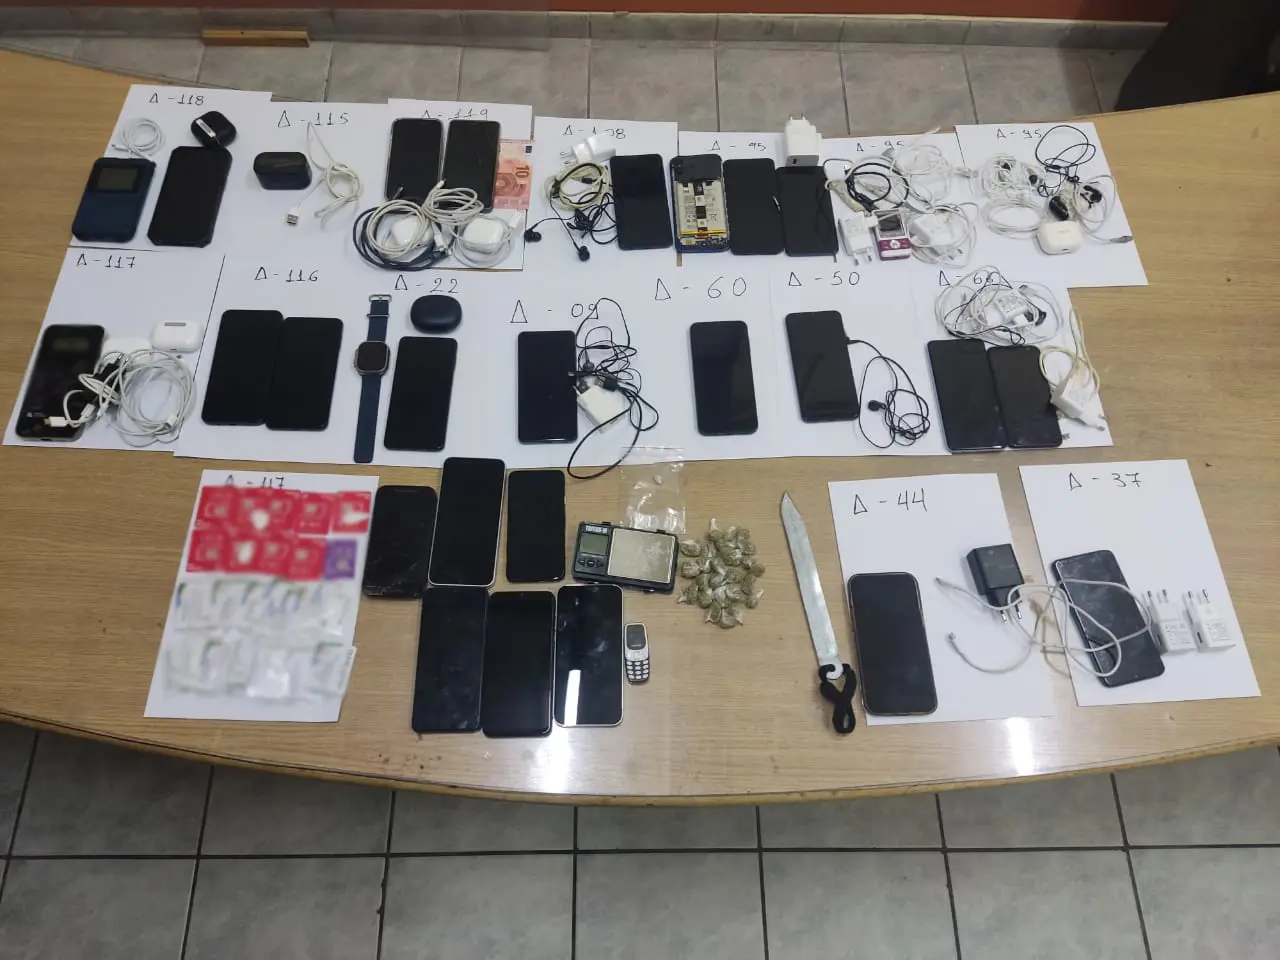 Έφοδος της ΕΛ.ΑΣ. στις φυλακές Κορυδαλλού – Βρέθηκαν κινητά και ναρκωτικά